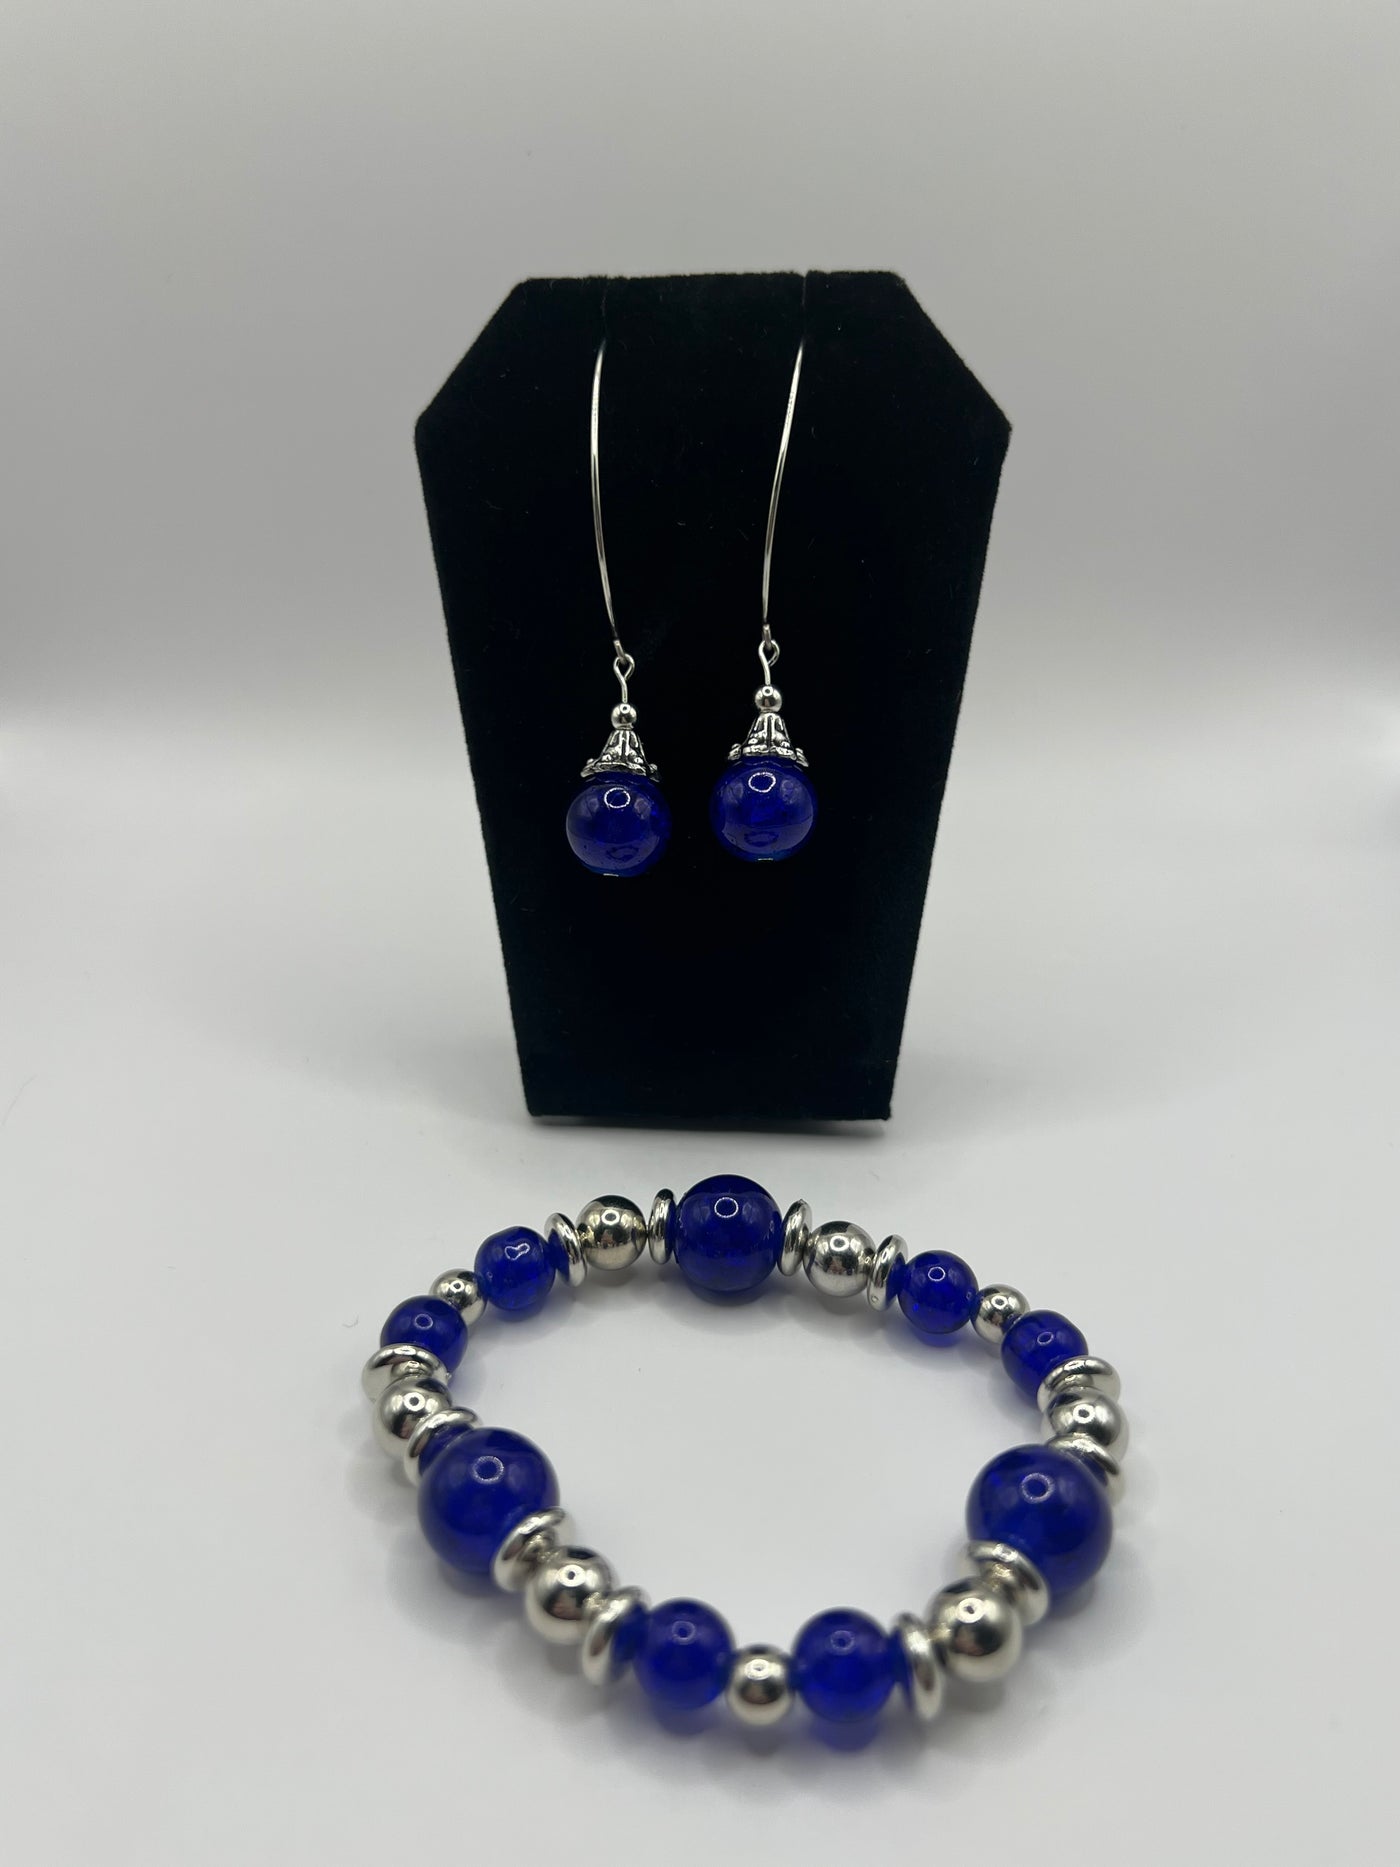 Earring and Bracelet Set - Royal Blue Glass Beads Stretch Bracelet